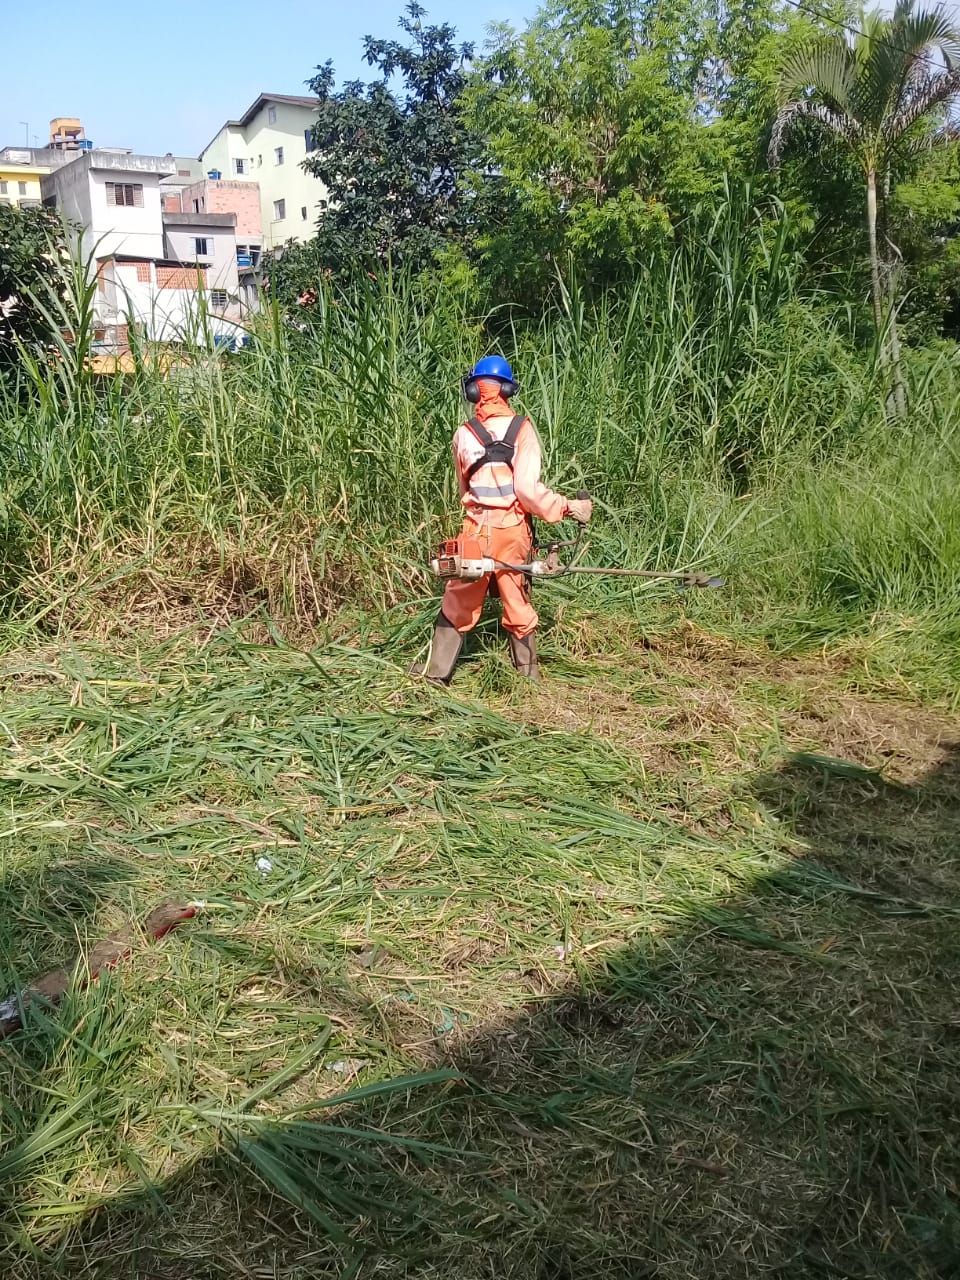 Funcionário de uniforme laranja corta gramado alto. Ao fundo, casas da região.